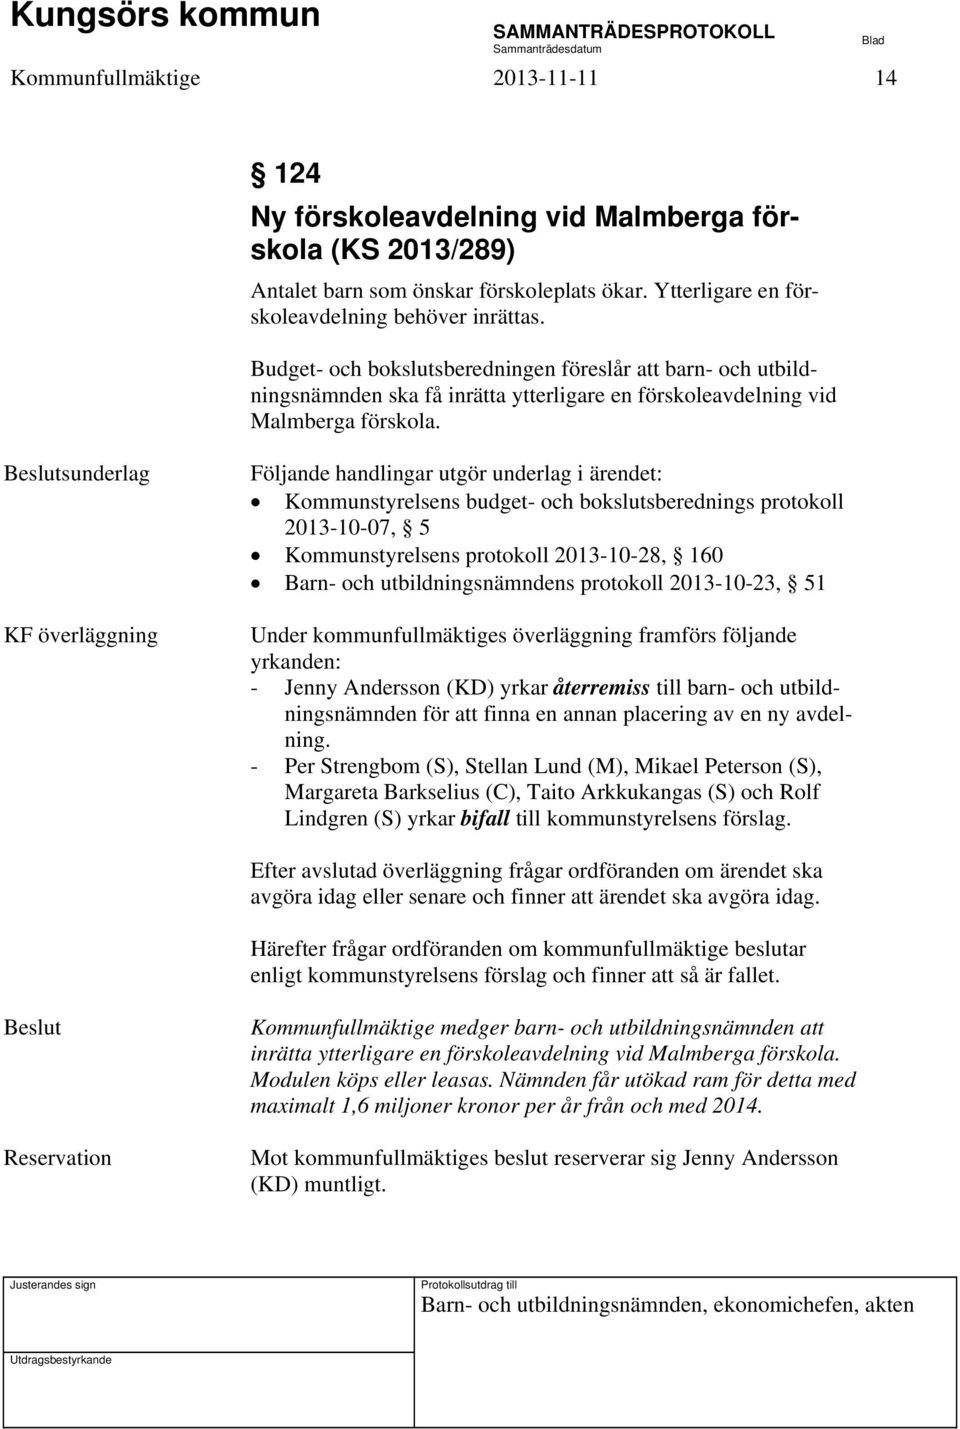 KF överläggning Kommunstyrelsens budget- och bokslutsberednings protokoll 2013-10-07, 5 Kommunstyrelsens protokoll 2013-10-28, 160 Barn- och utbildningsnämndens protokoll 2013-10-23, 51 Under